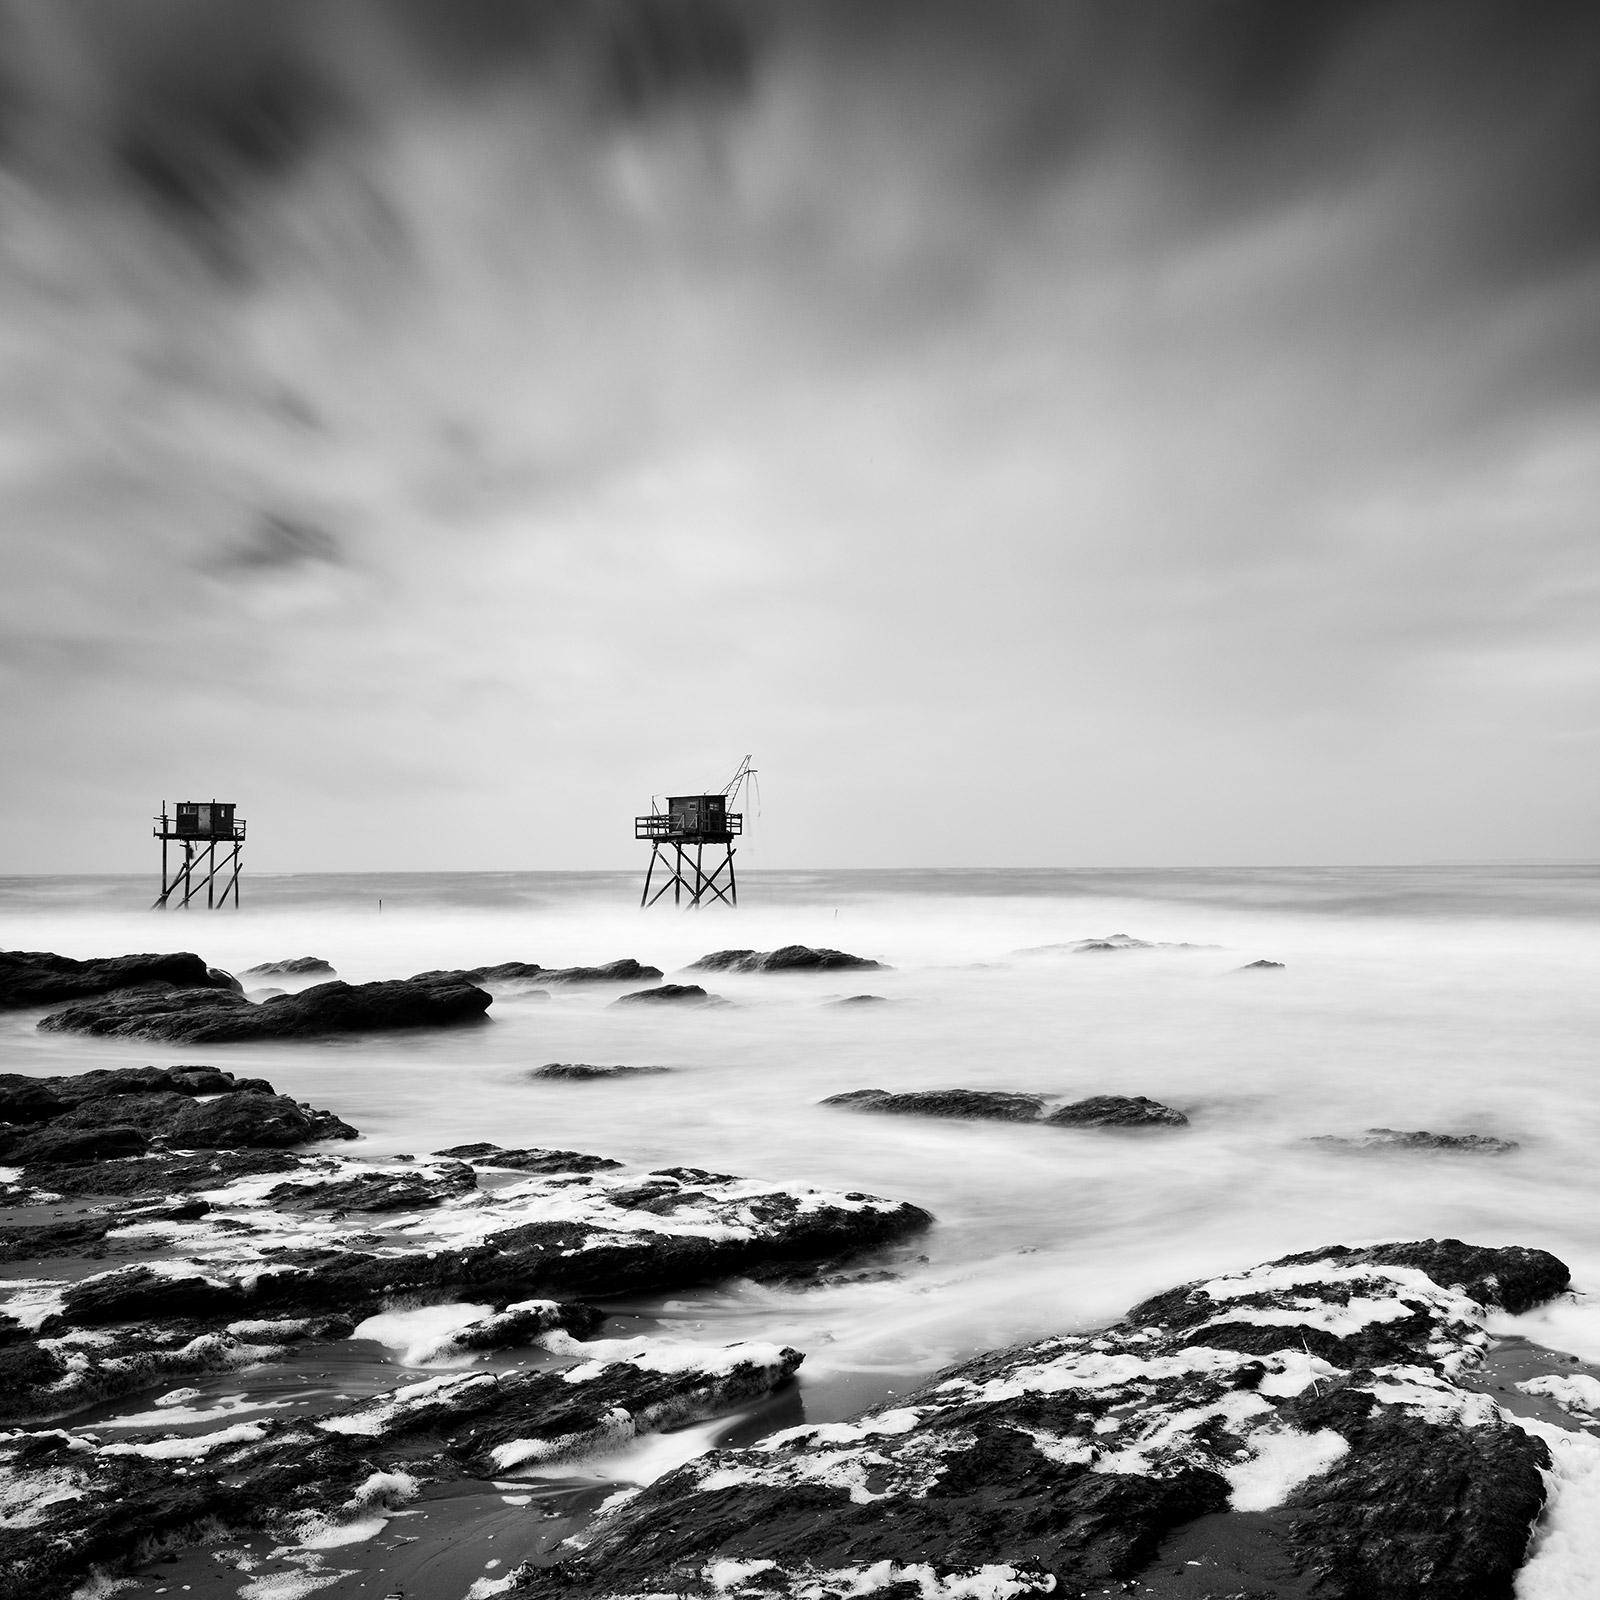 Cabaña de pesca sobre zancos, costa del océano Atlántico, paisaje acuático en blanco y negro